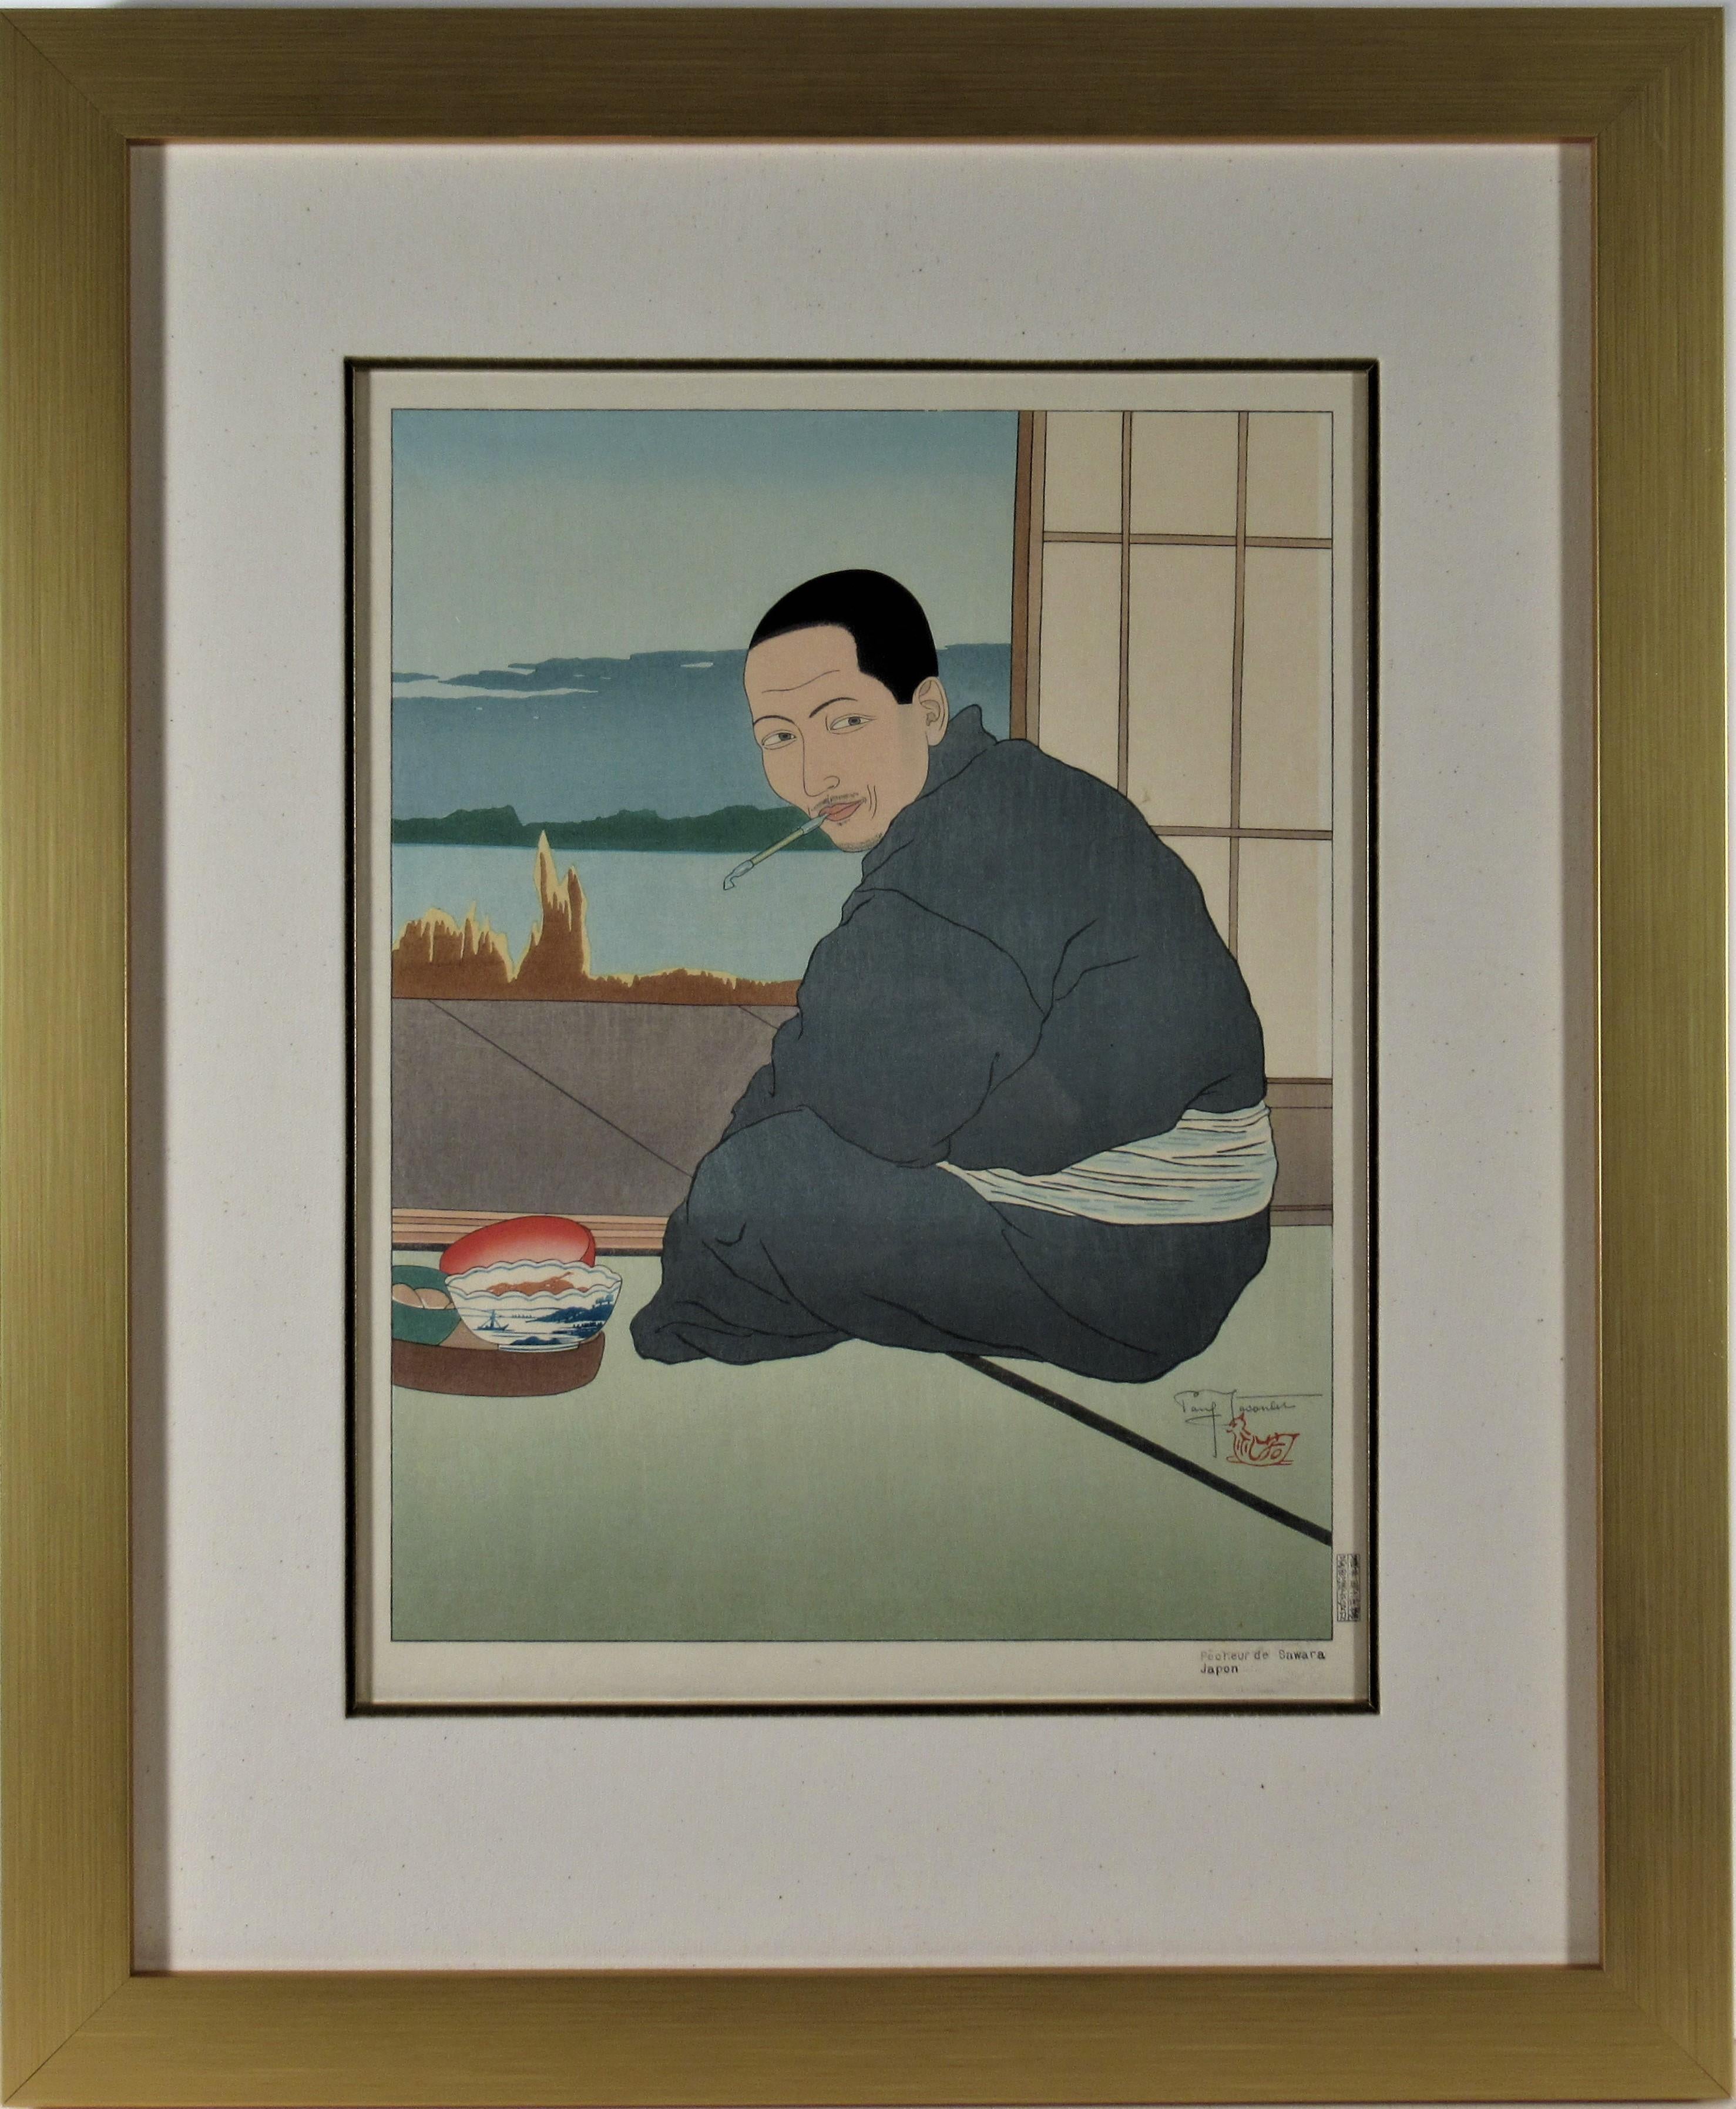 Paul Jacoulet Figurative Print - Pecheur de Sawara, Japon (Fisherman of Sawara, Japan)